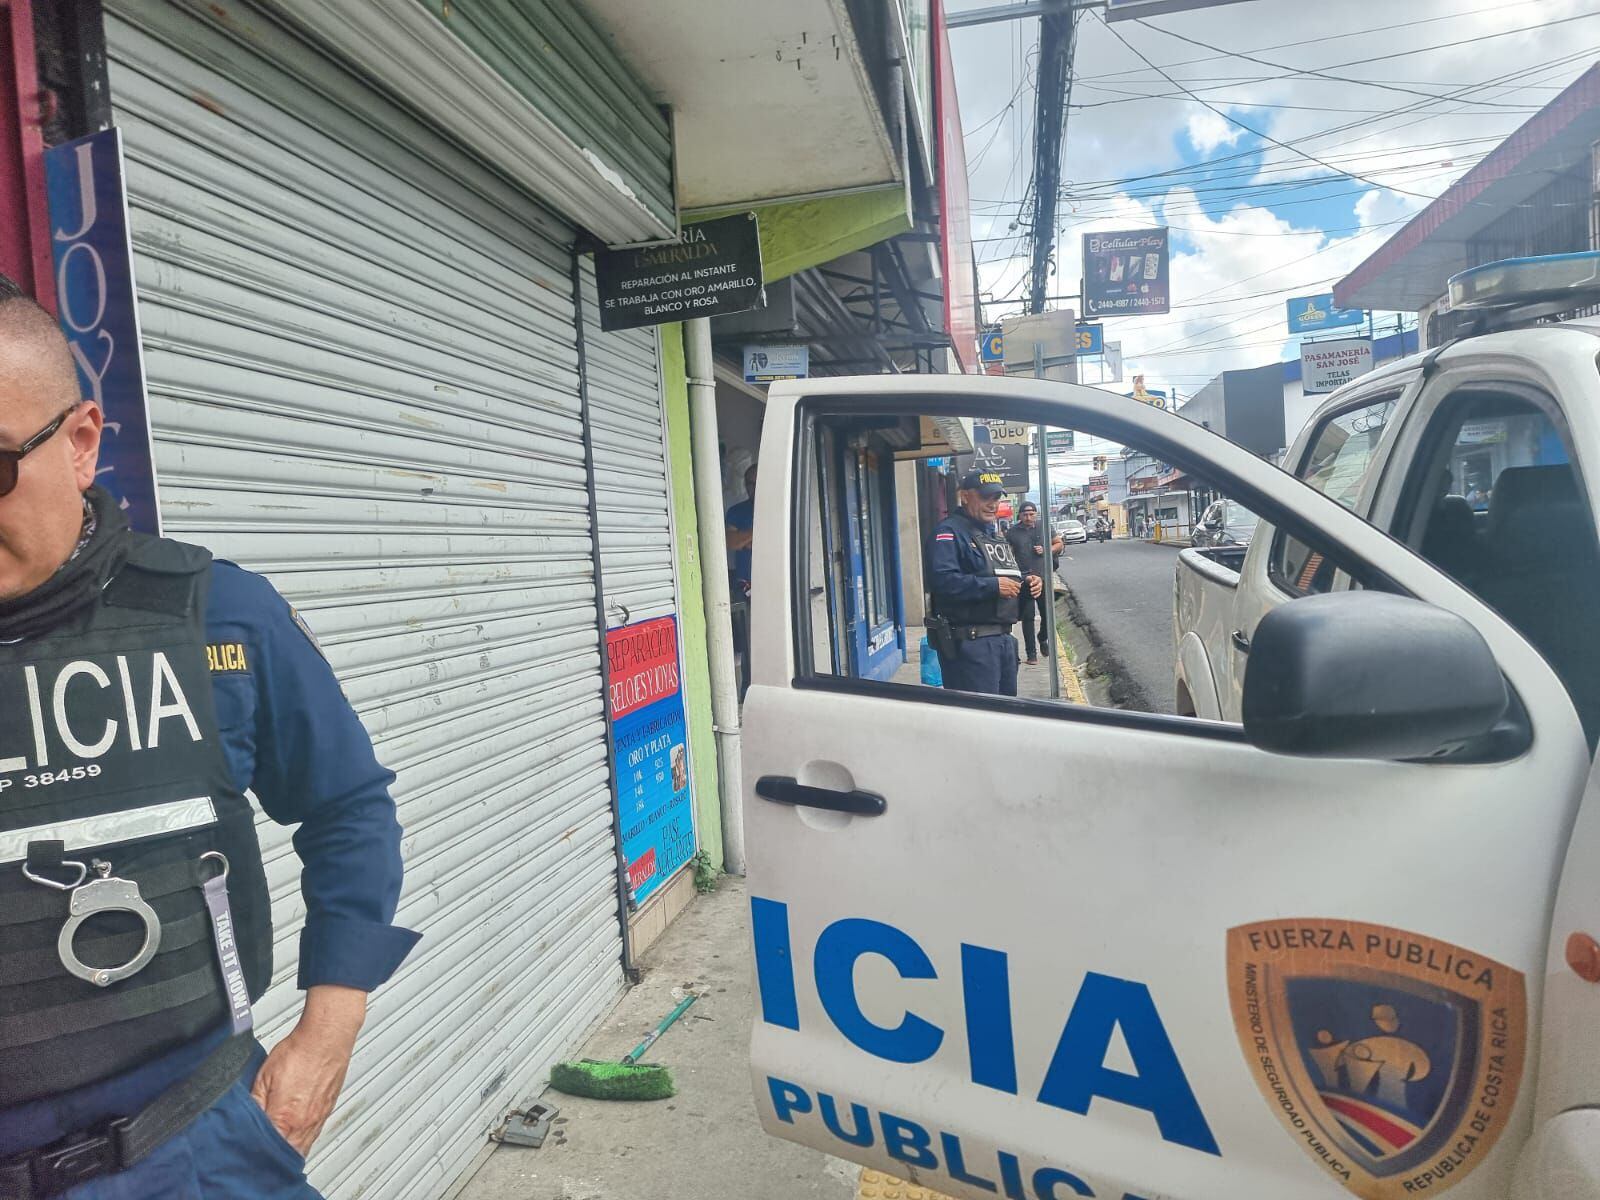 Policías revisan la joyería en donde hubo un asalto en Alajuela. Foto: Irene Vizcaino